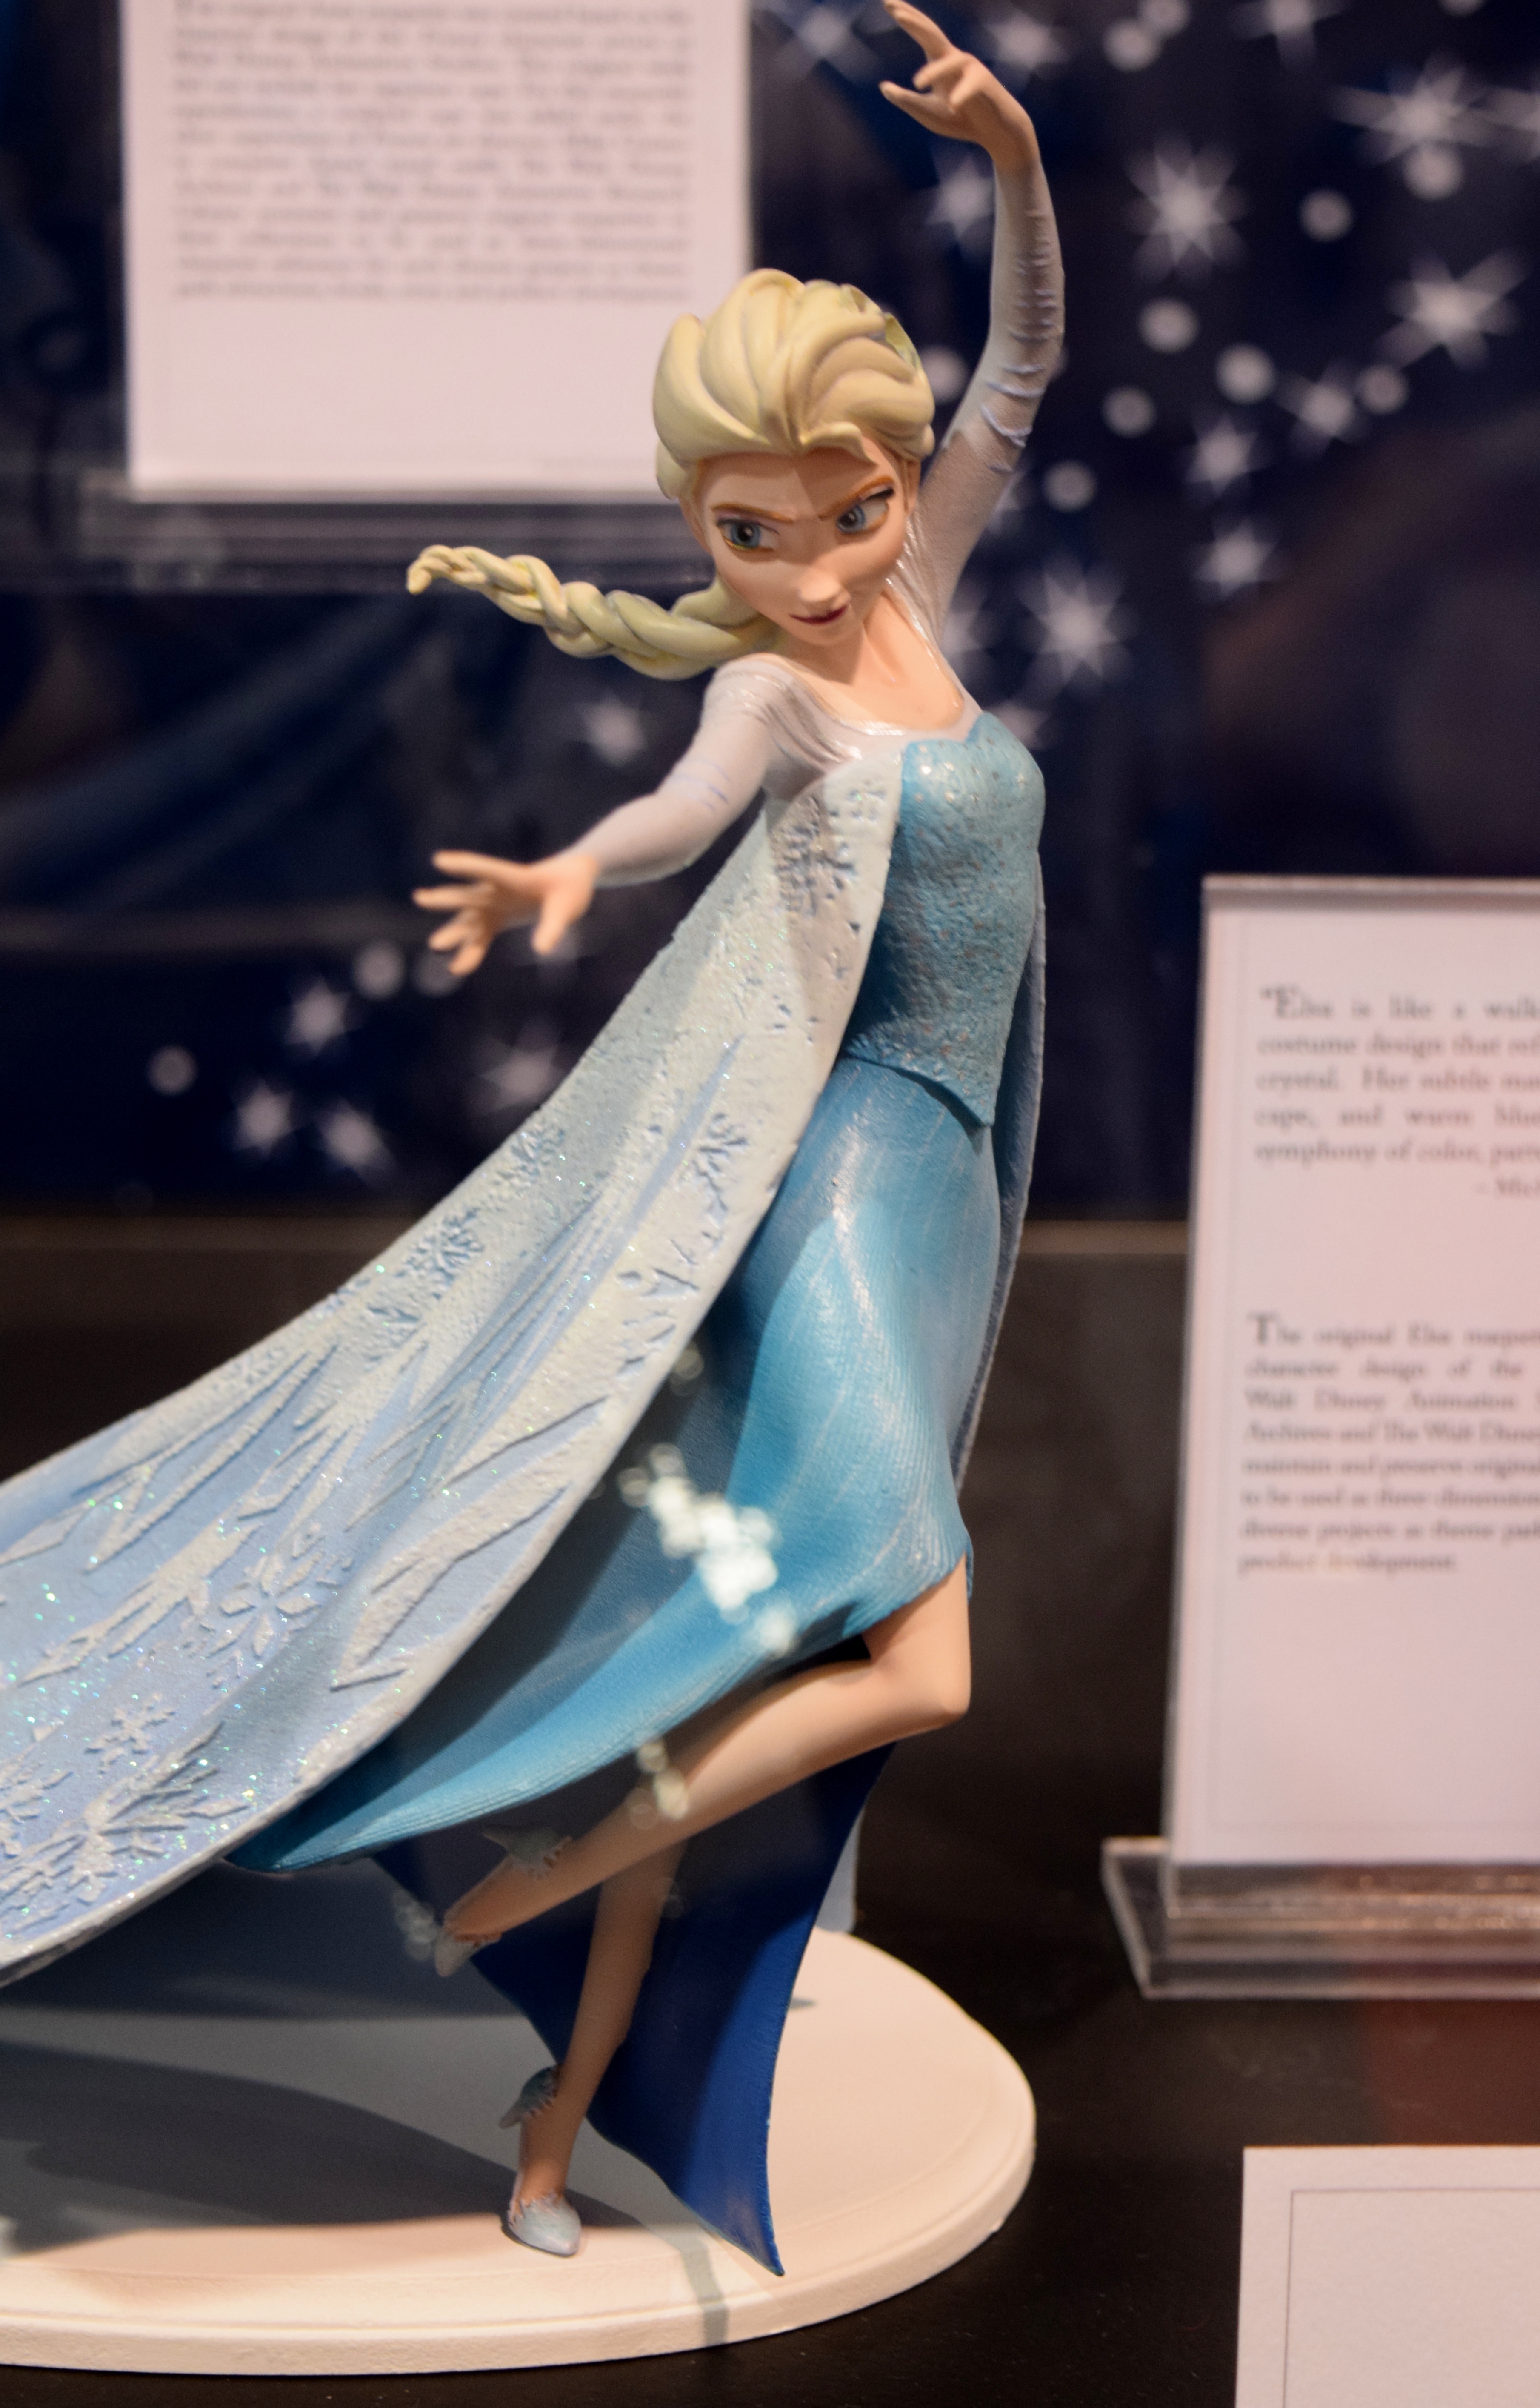 personnages - Figurines des personnages de "Frozen". - Page 4 20507358228_1ebe30b22b_o